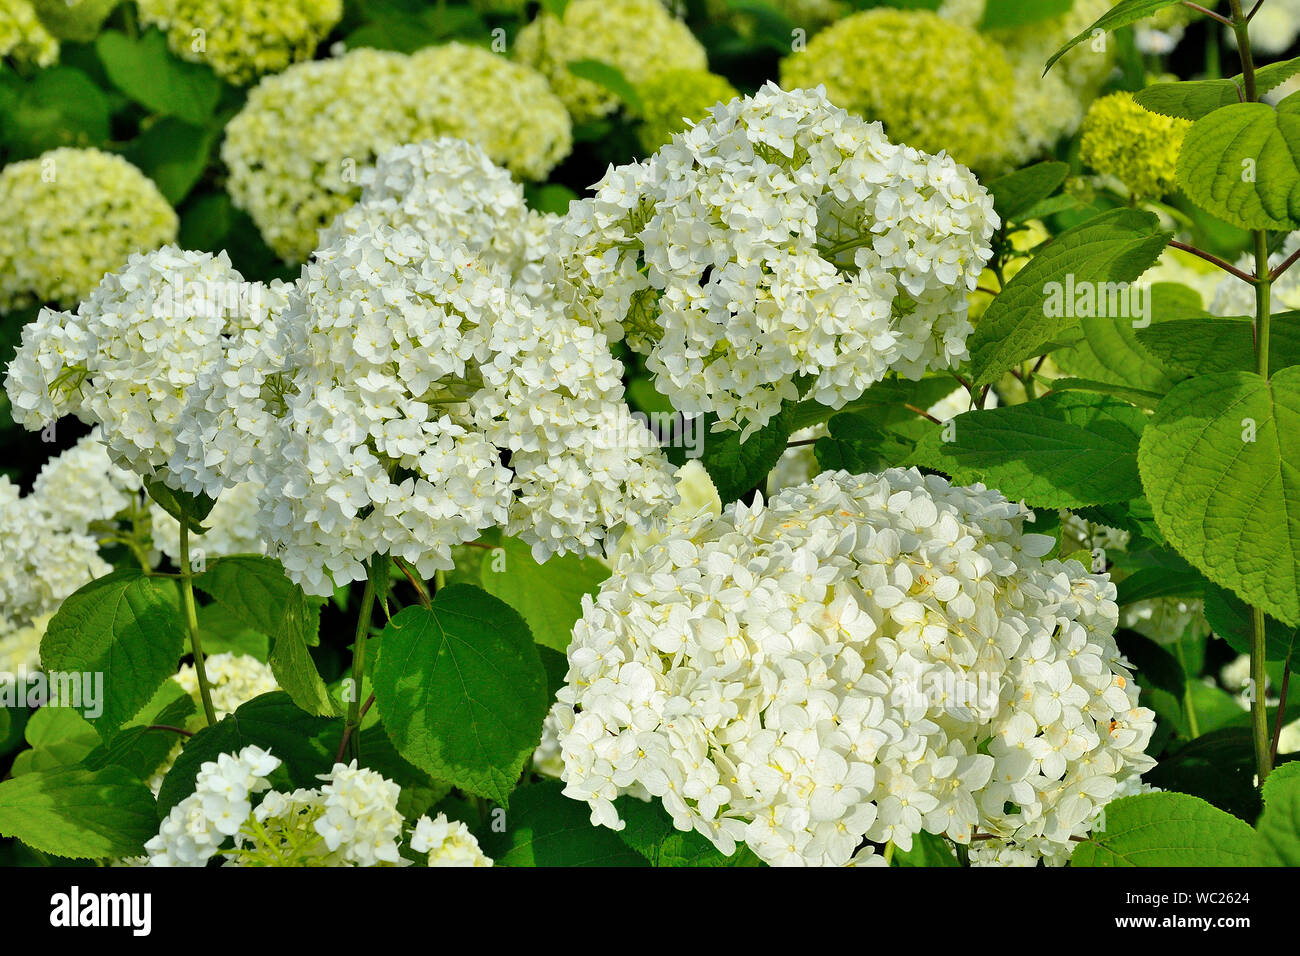 Weiße Hortensie Blütenstand im Sommer Garten hautnah. Blühende Hortensien, schöne sanfte weiße Blumen - Sommer floral background. Hortensia Stockfoto